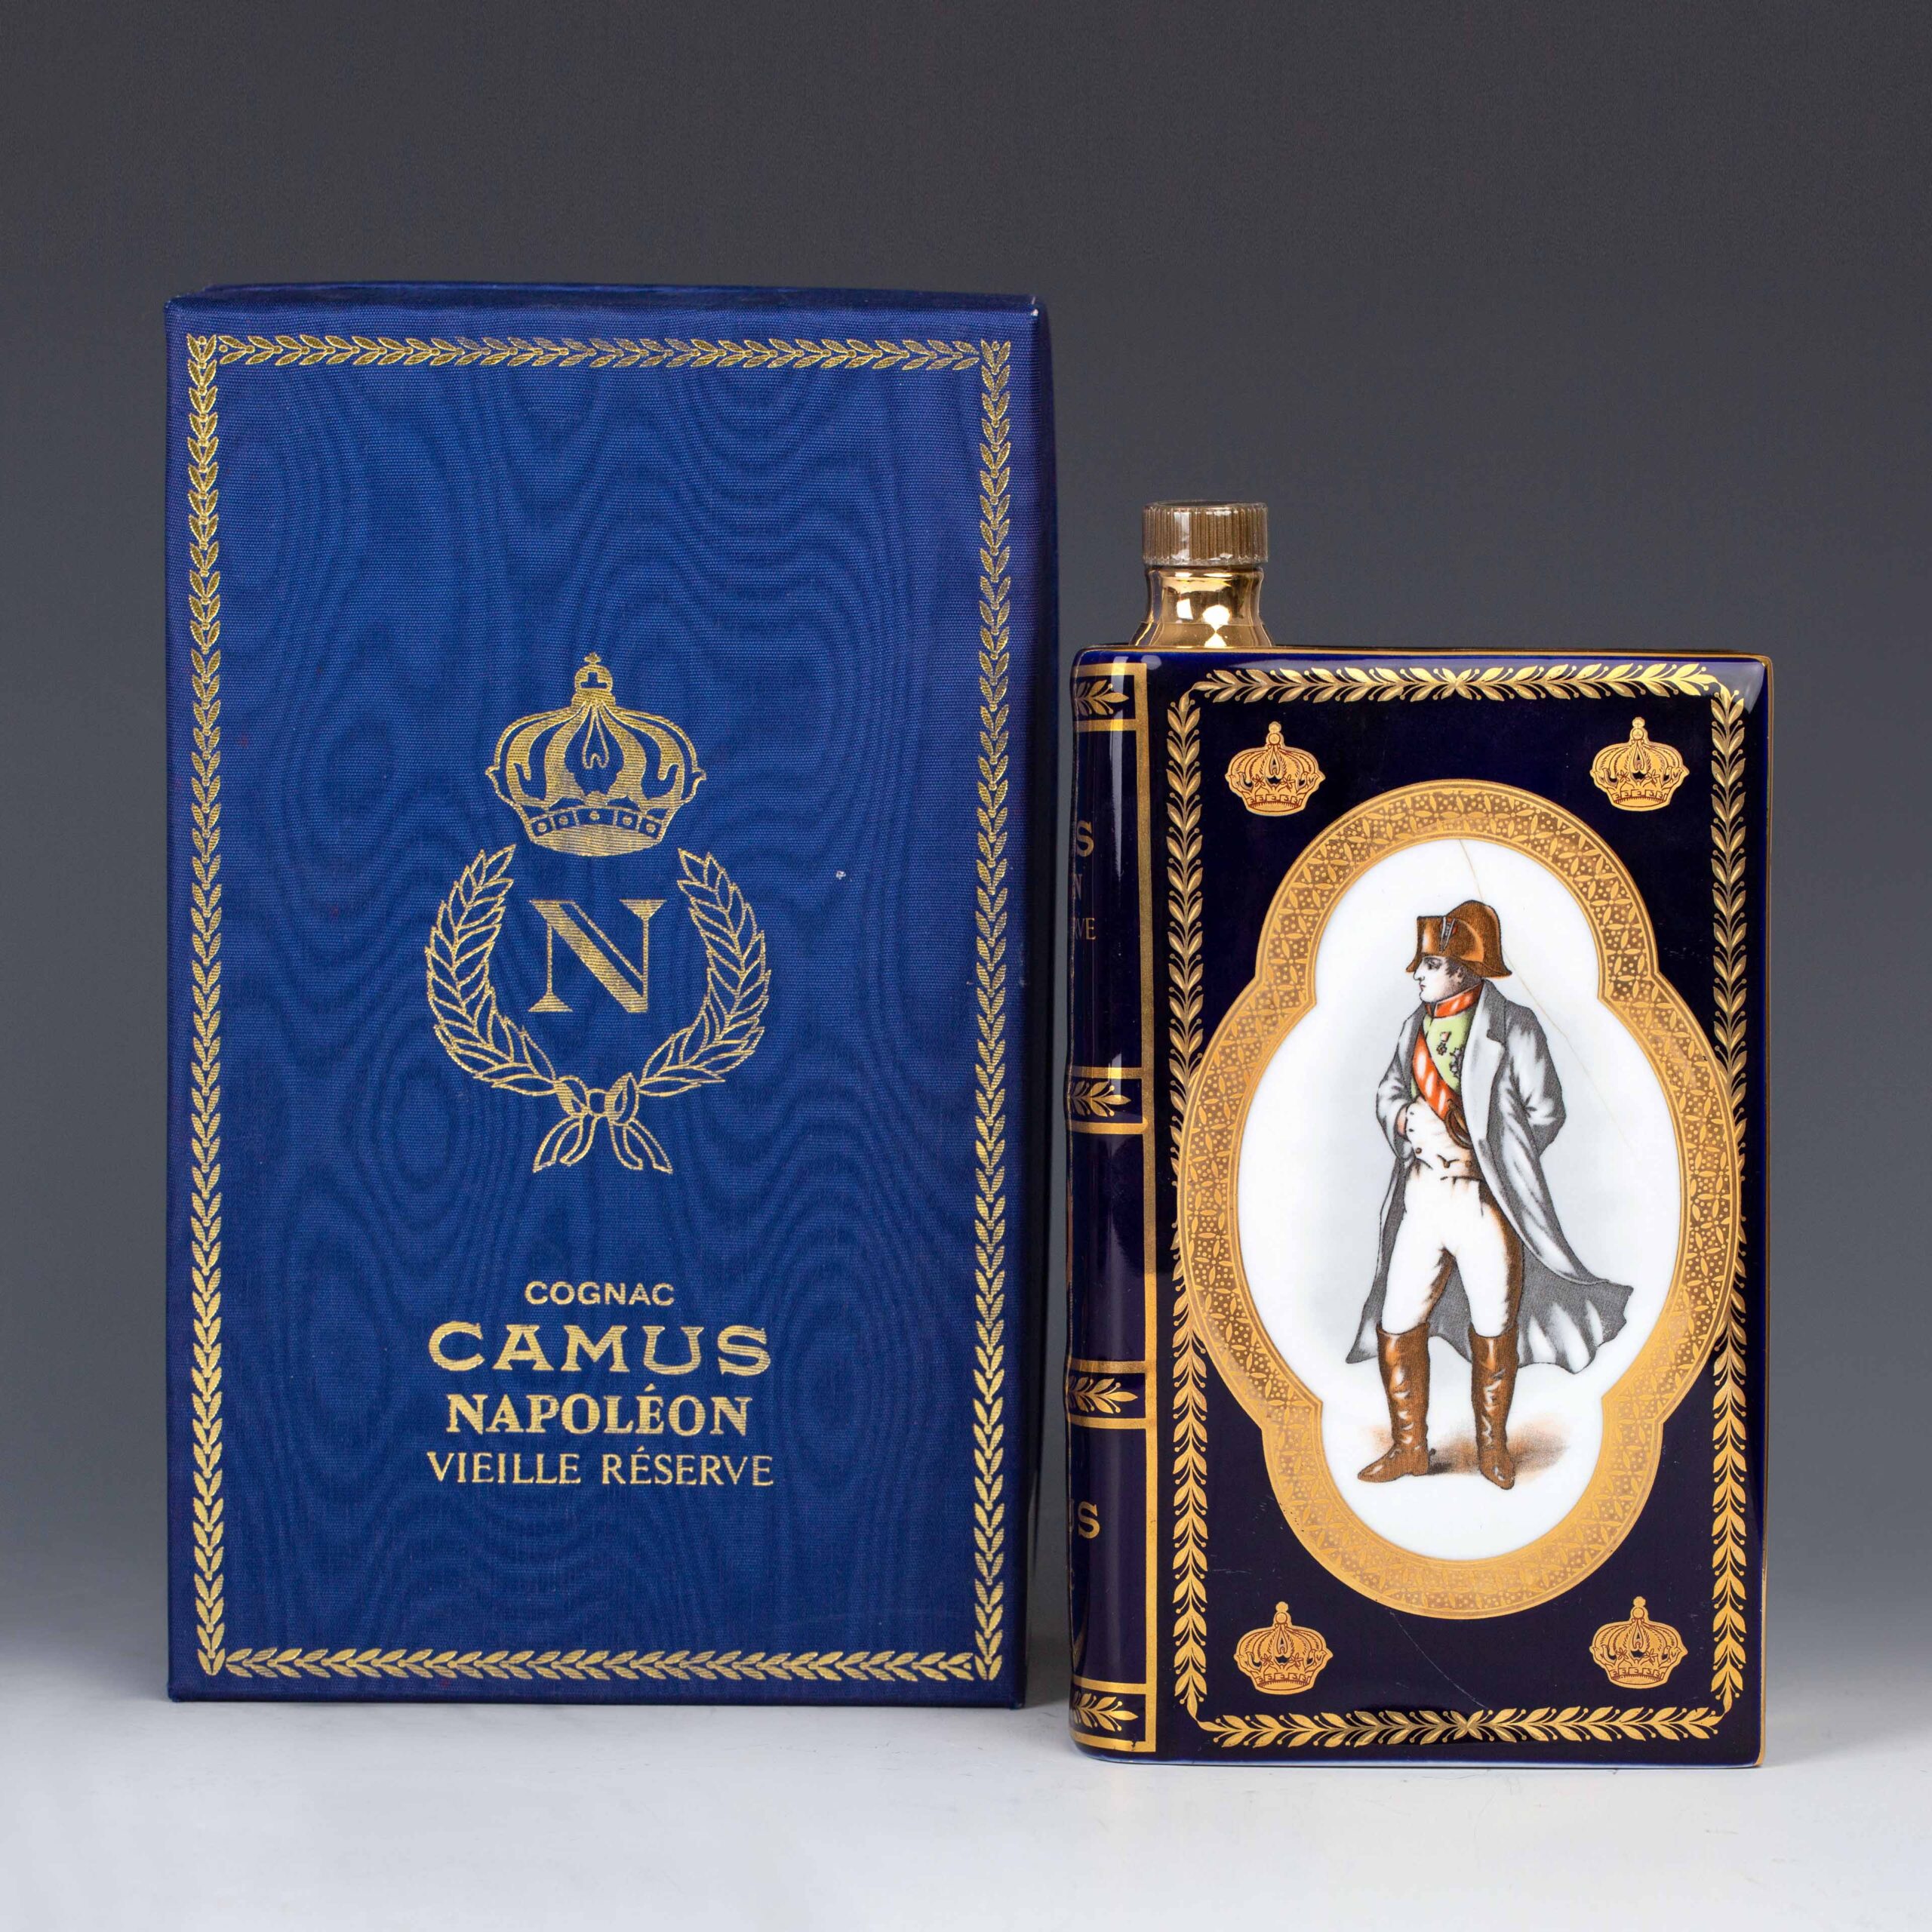 Vintage Camus Napoleon Cognac Ceramic Book Bicentenary – 200th